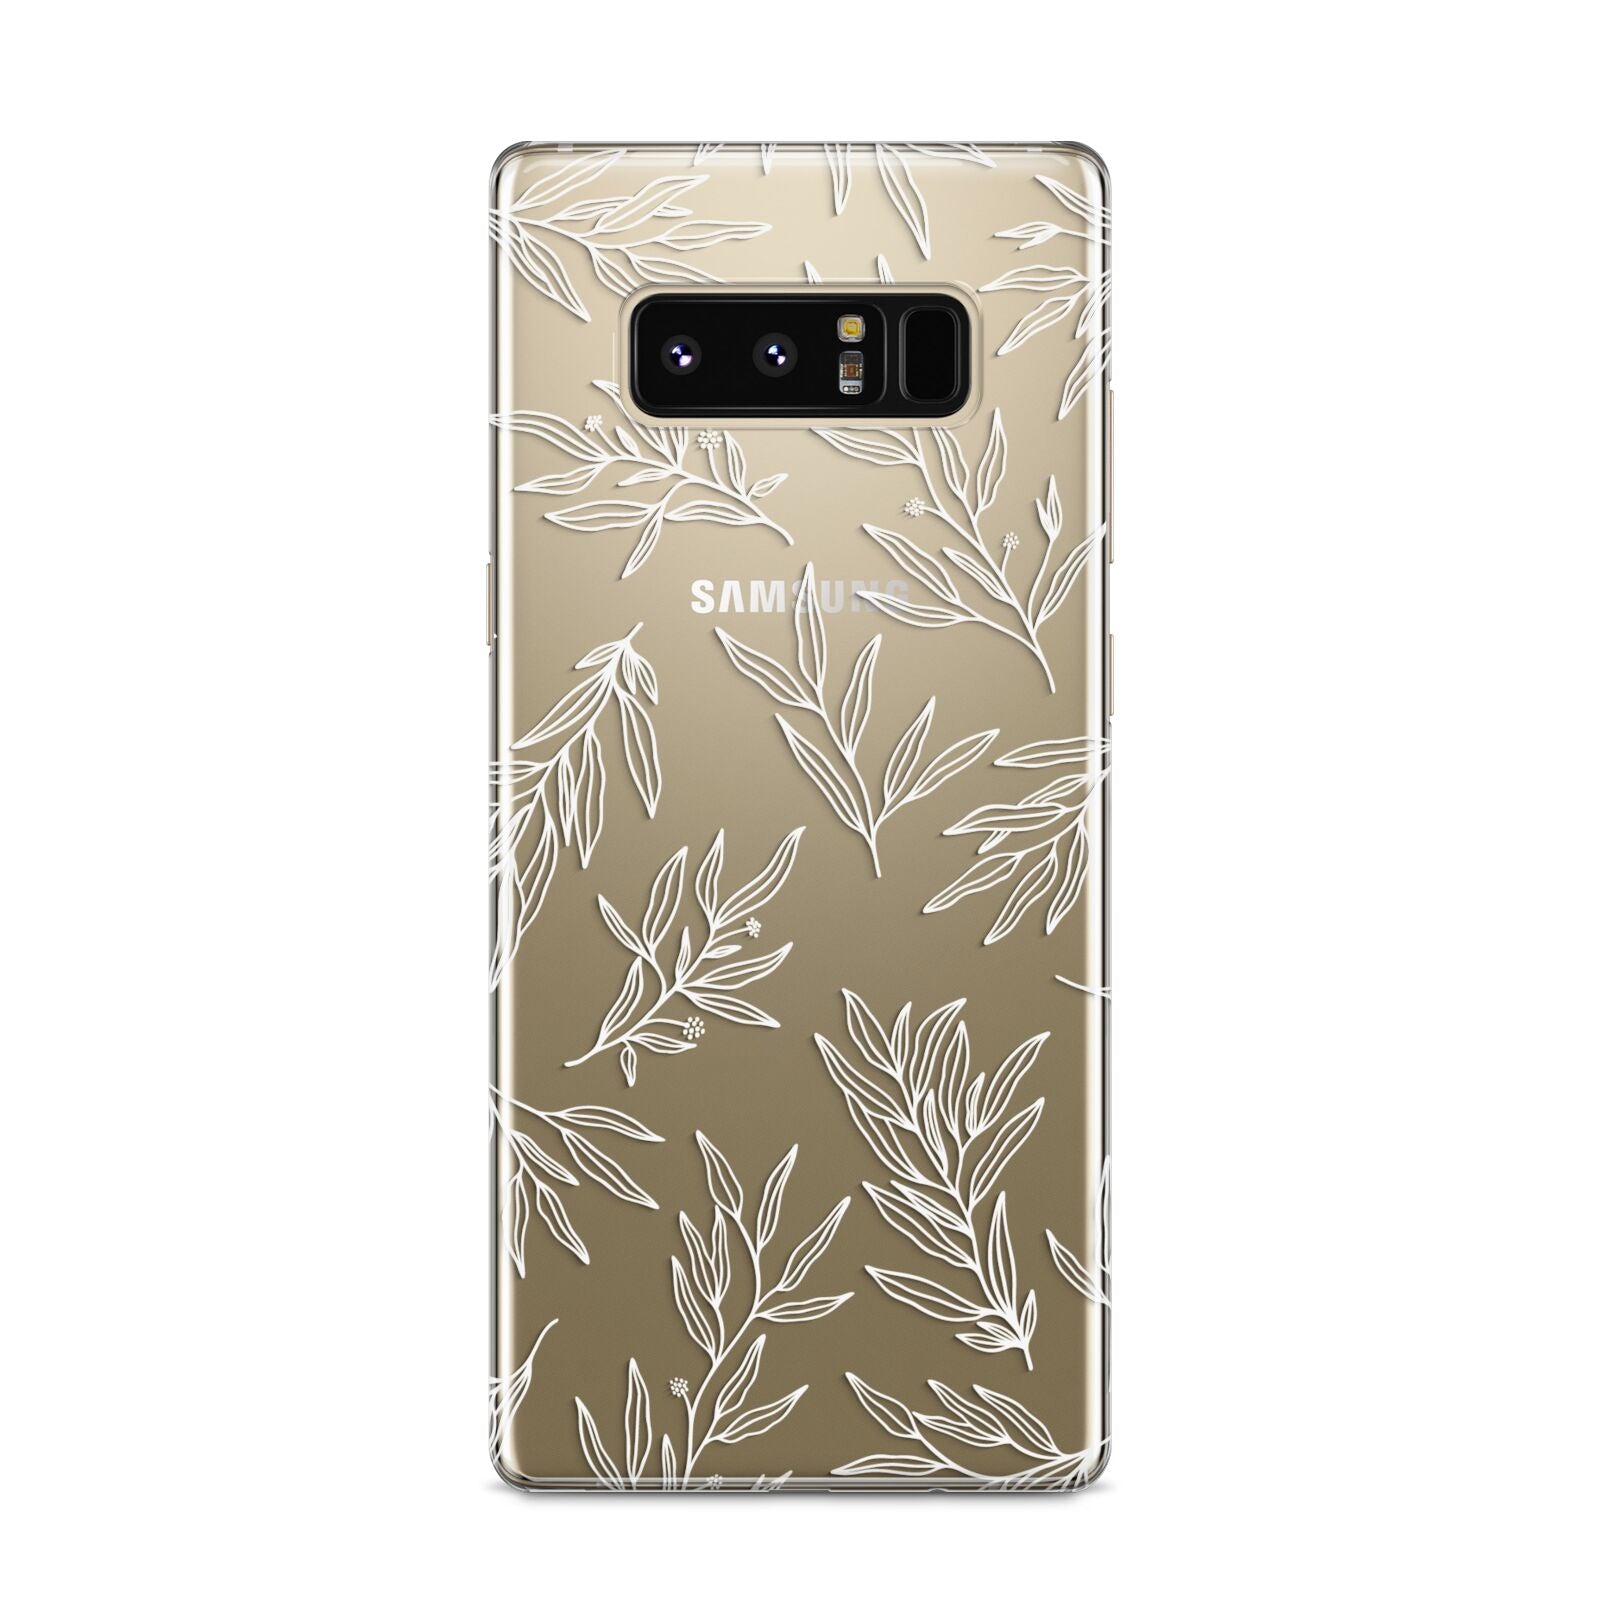 Botanical Leaf Samsung Galaxy S8 Case